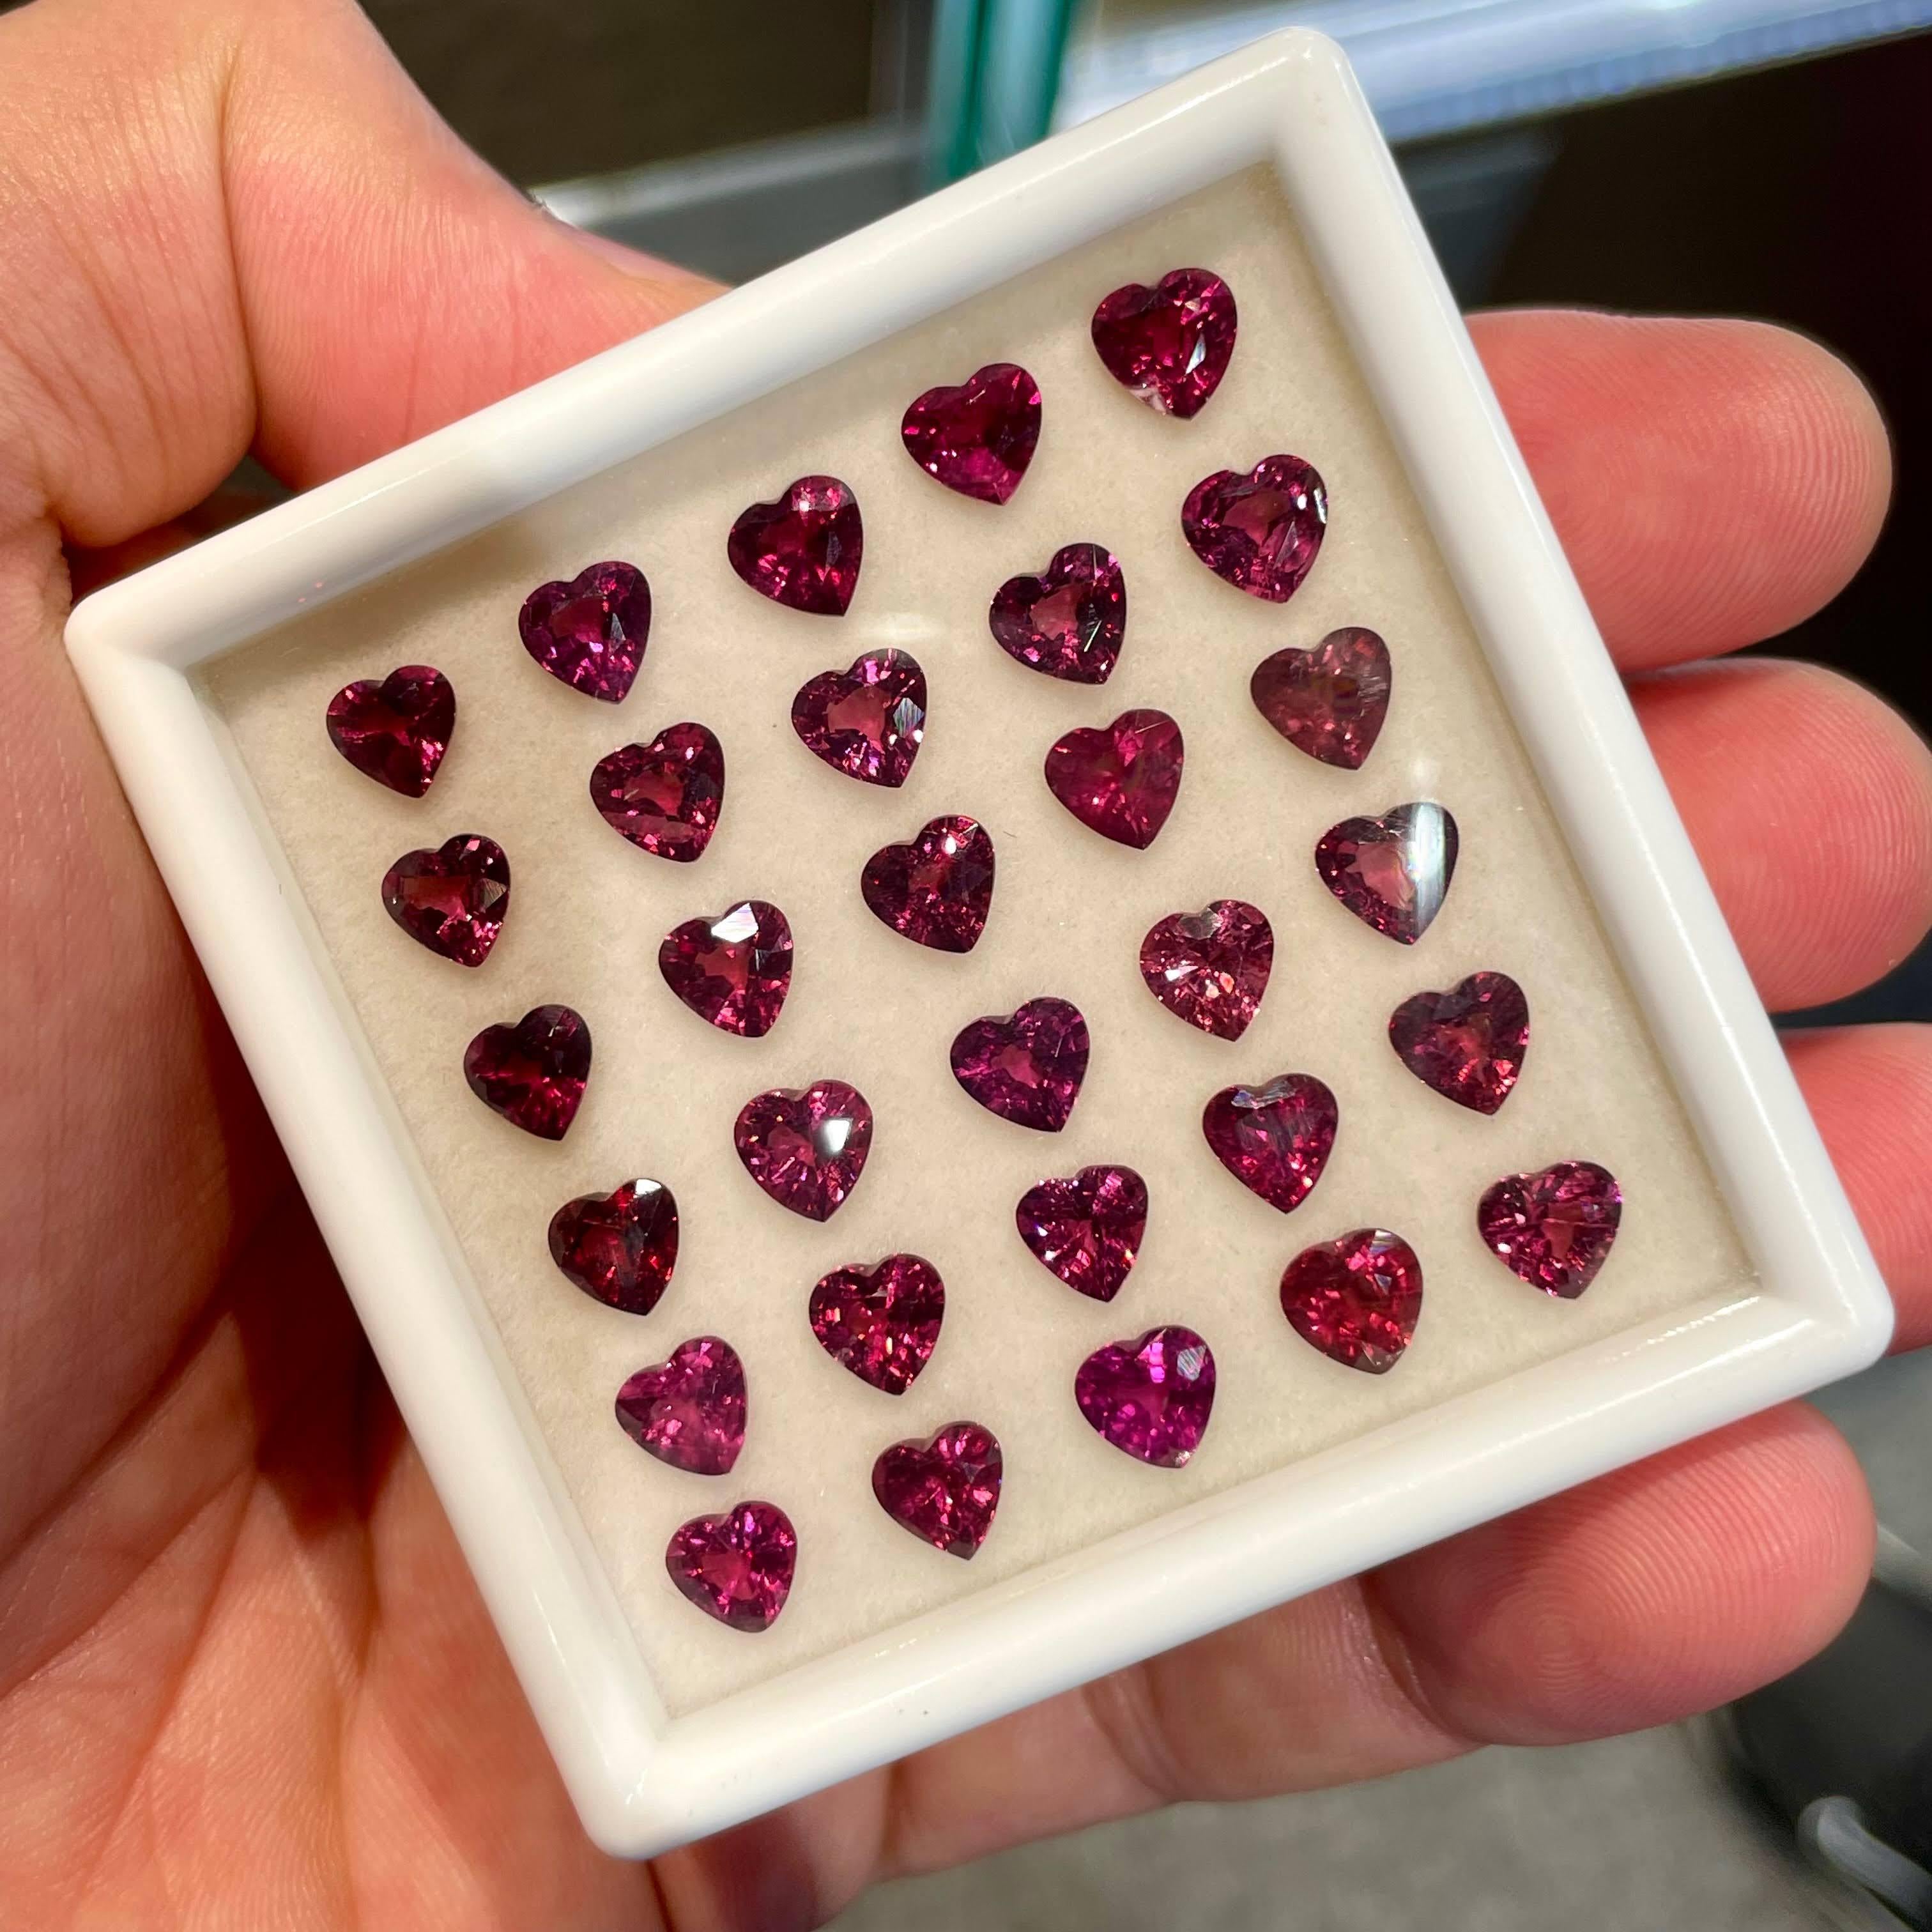 Poids 26,60 carats
Dim 6.1x5.8x3.7 mm
Traitement Aucun
Clarity Clean
Origine Madagascar
Forme du cœur
Découpe du cœur Découpe de l'étape





Le grenat rouge en forme de cœur de 14,07 carats est une pierre précieuse naturelle tanzanienne qui séduit